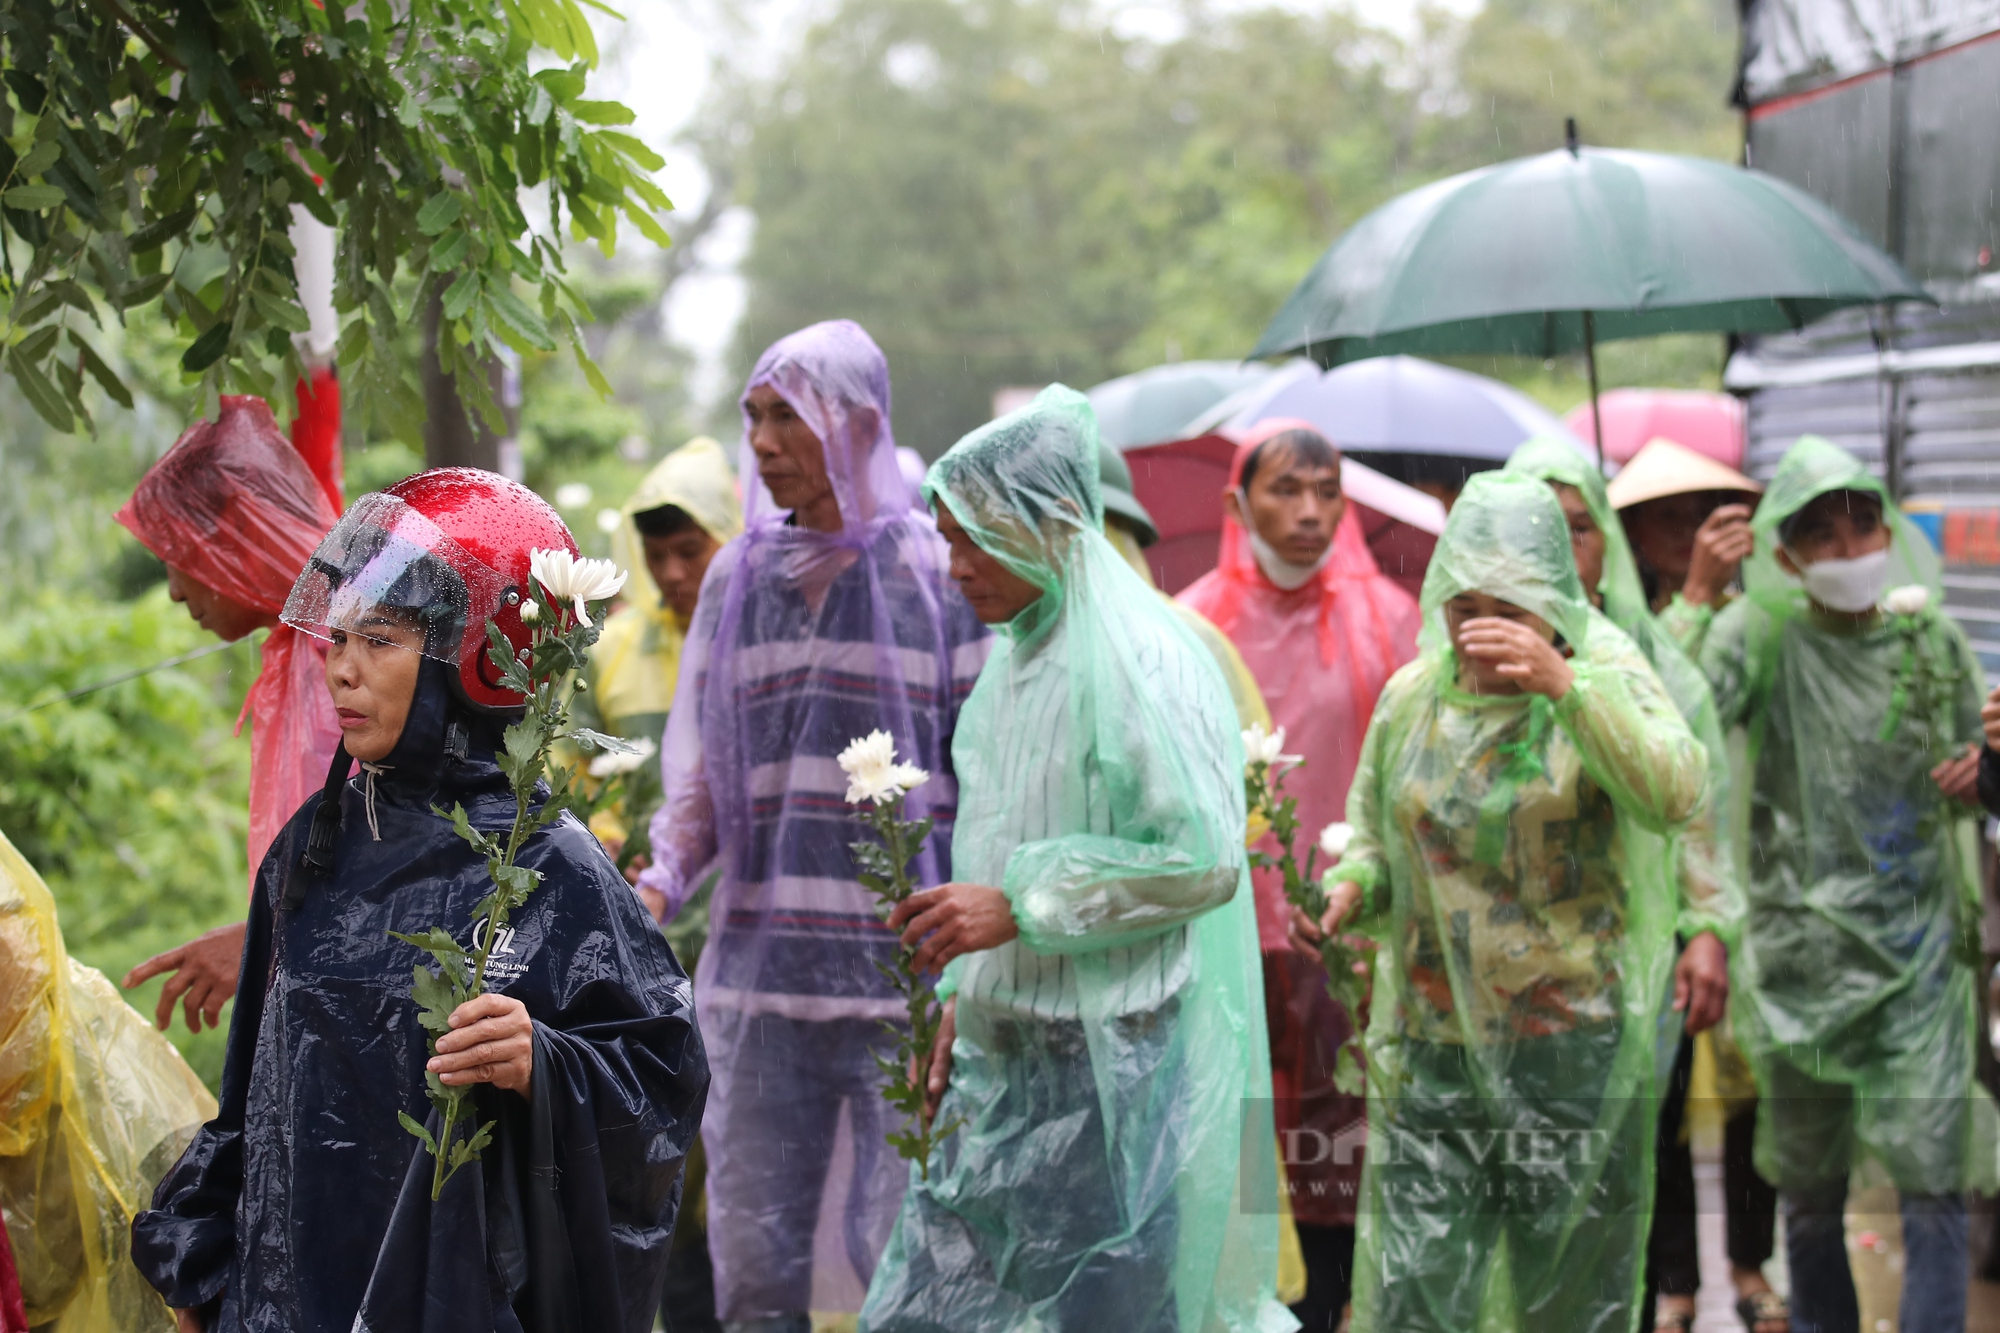 Xúc động cảnh người dân đứng dưới mưa đón Đại úy Lê Ánh Sáng trở về quê nhà - Ảnh 7.